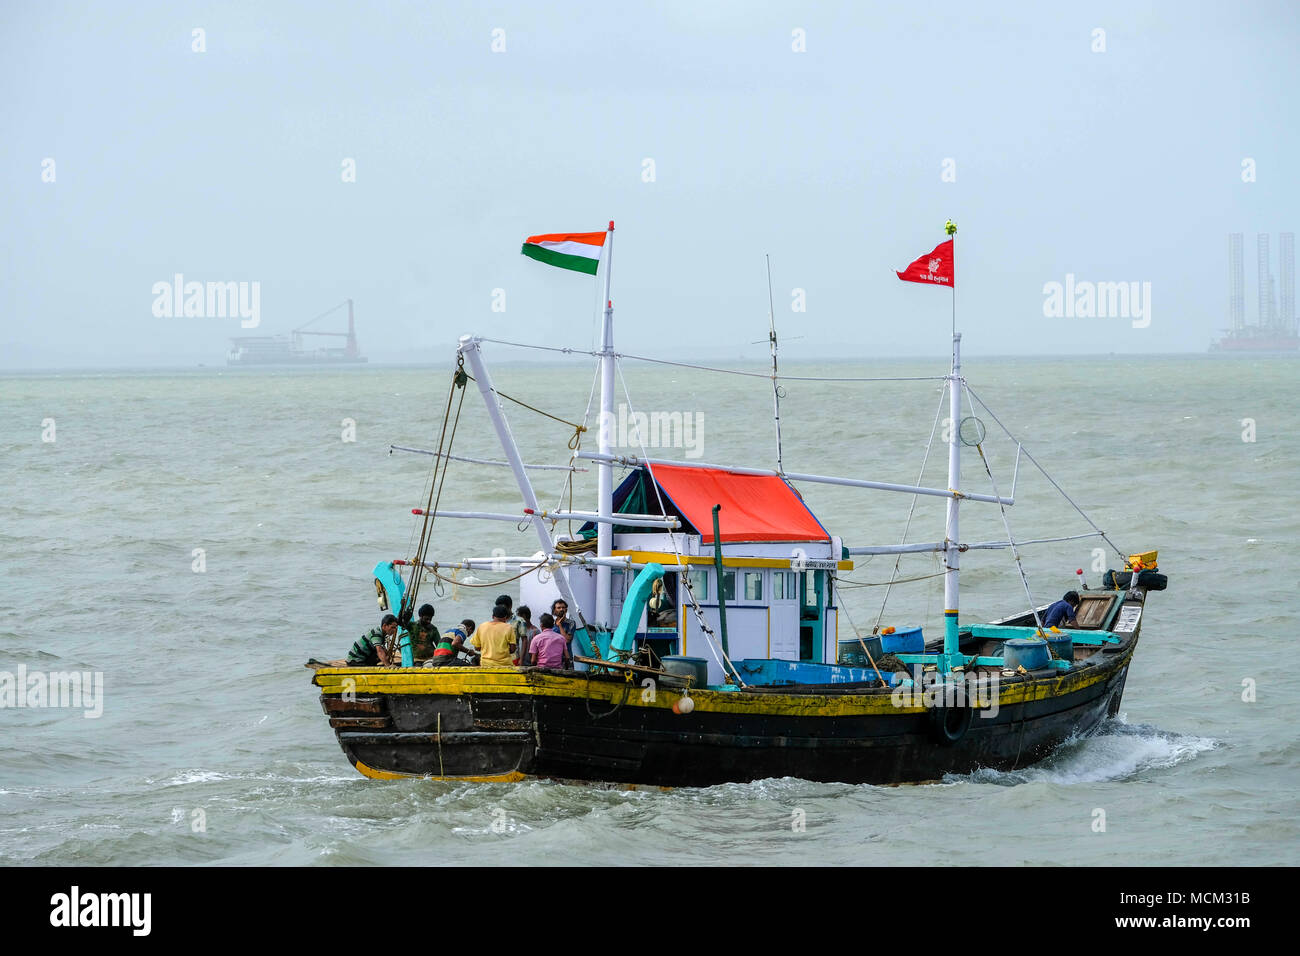 Bateau de pêche en bois battant pavillon indien, la voile sur la mer d'Oman à Mumbai, Inde Banque D'Images